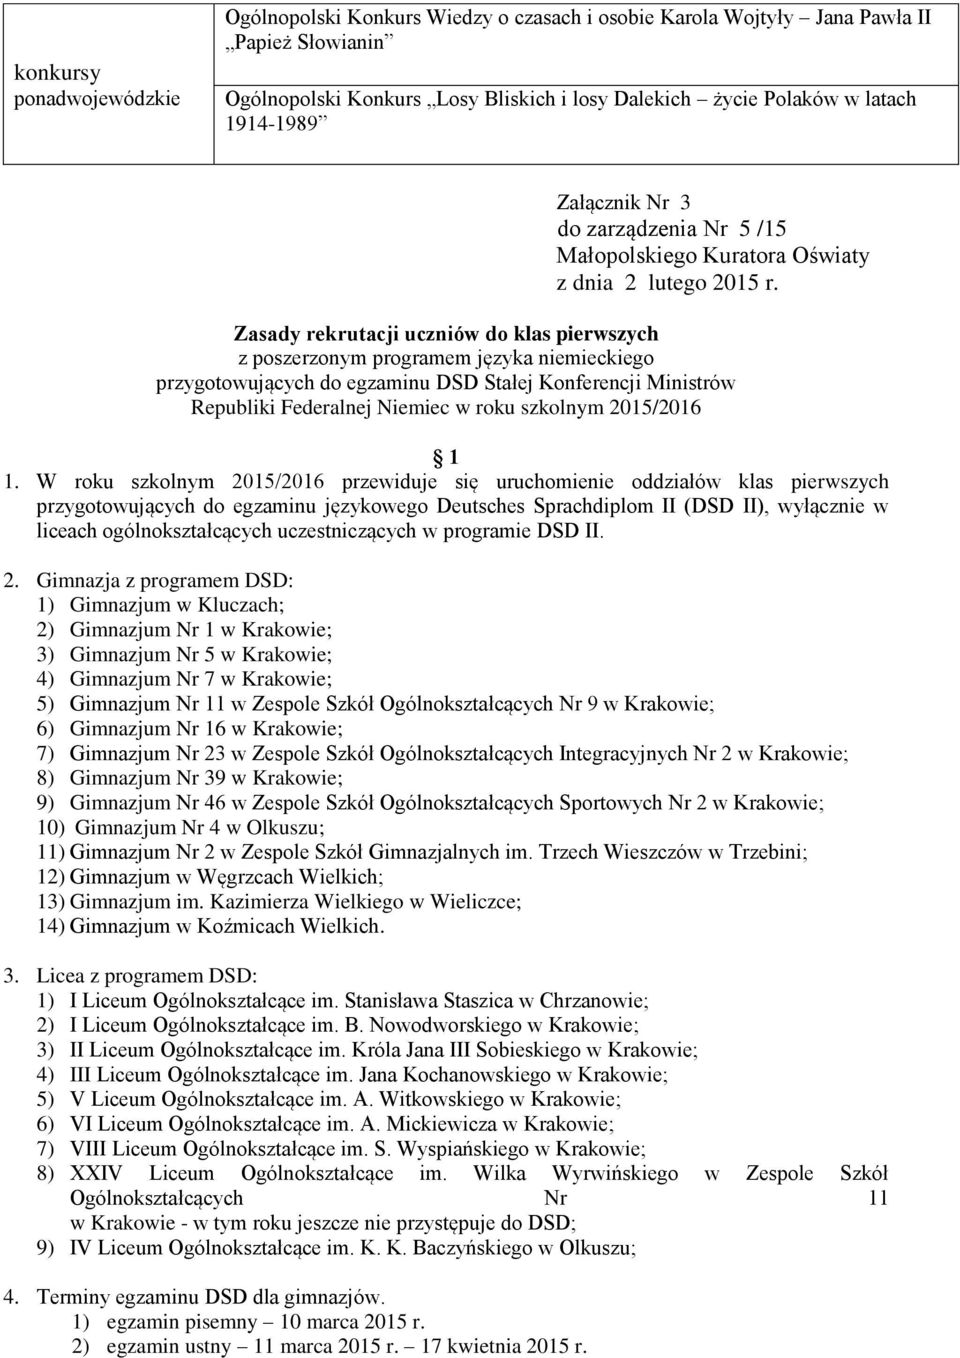 Zasady rekrutacji uczniów do klas pierwszych z poszerzonym programem języka niemieckiego przygotowujących do egzaminu DSD Stałej Konferencji Ministrów Republiki Federalnej Niemiec w roku szkolnym